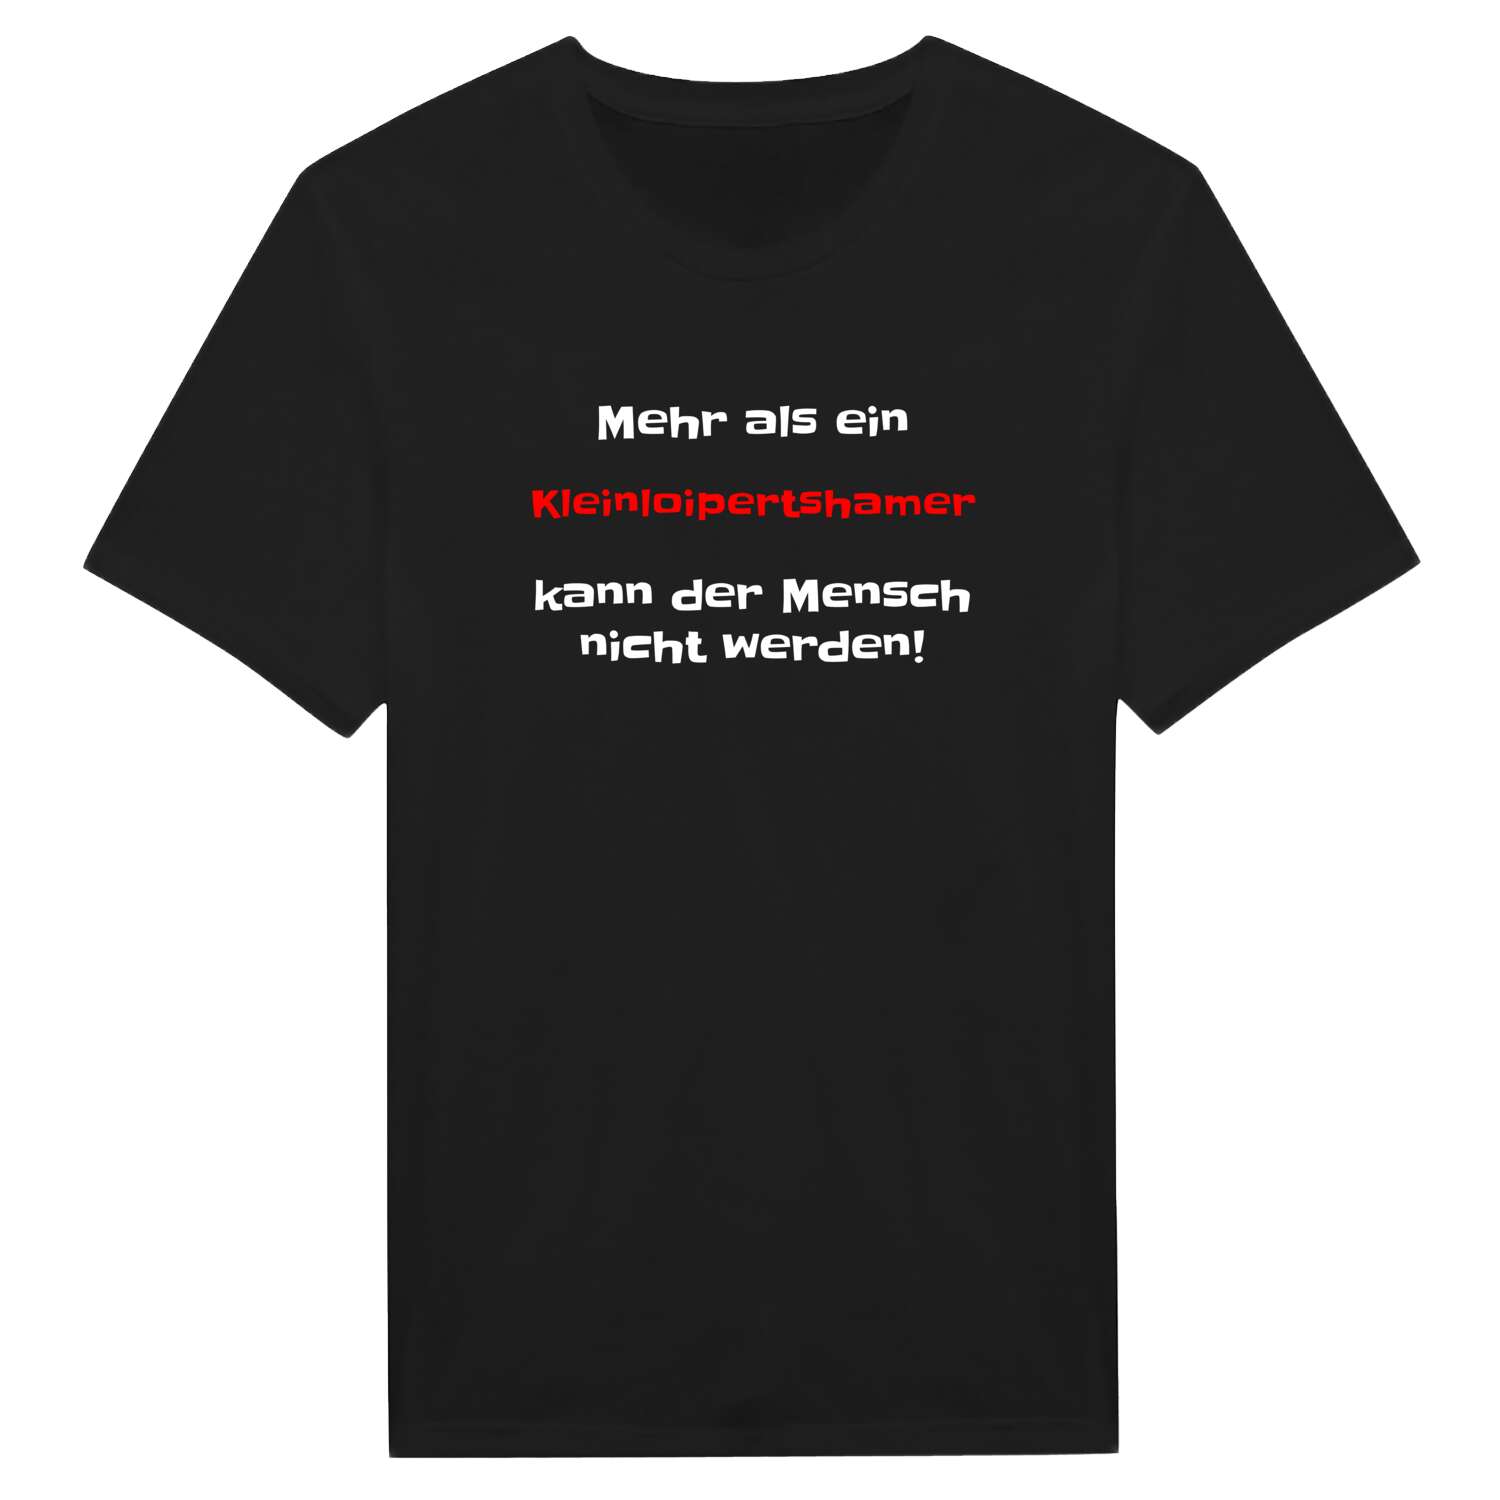 Kleinloipertsham T-Shirt »Mehr als ein«